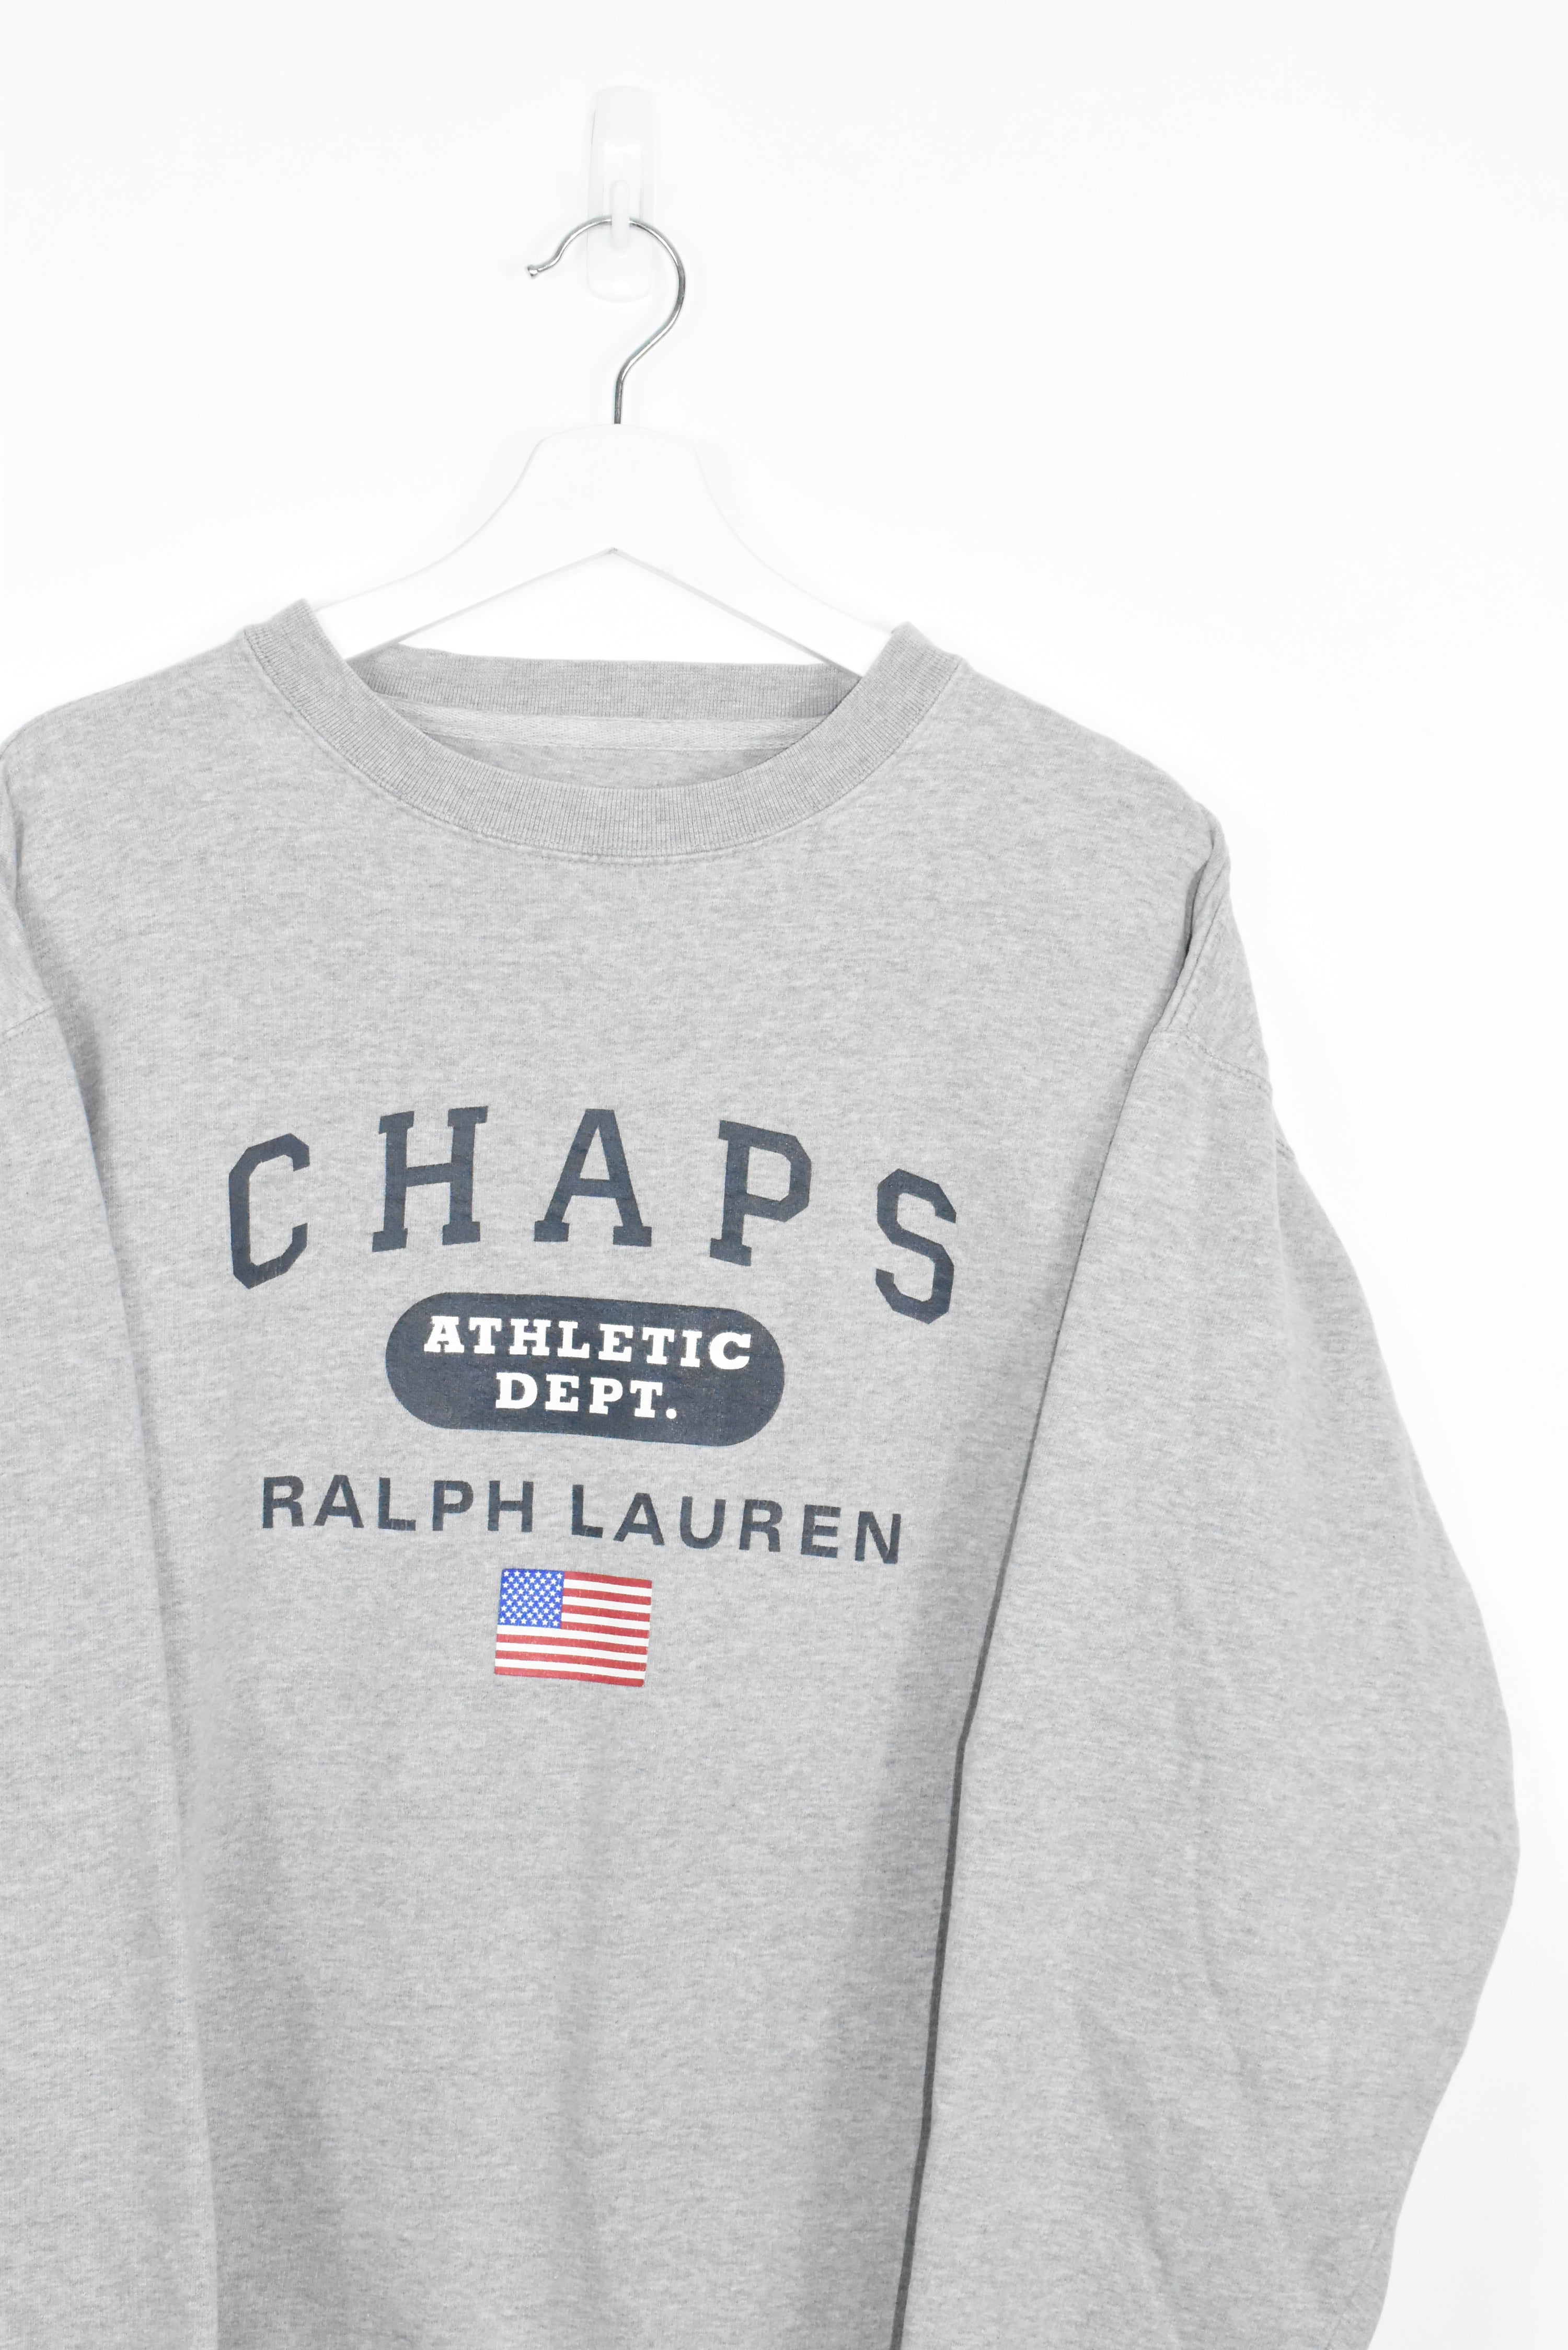 Vintage Chaps Ralph Lauren Sweatshirt XL - REVIVED Vintage est. 2020